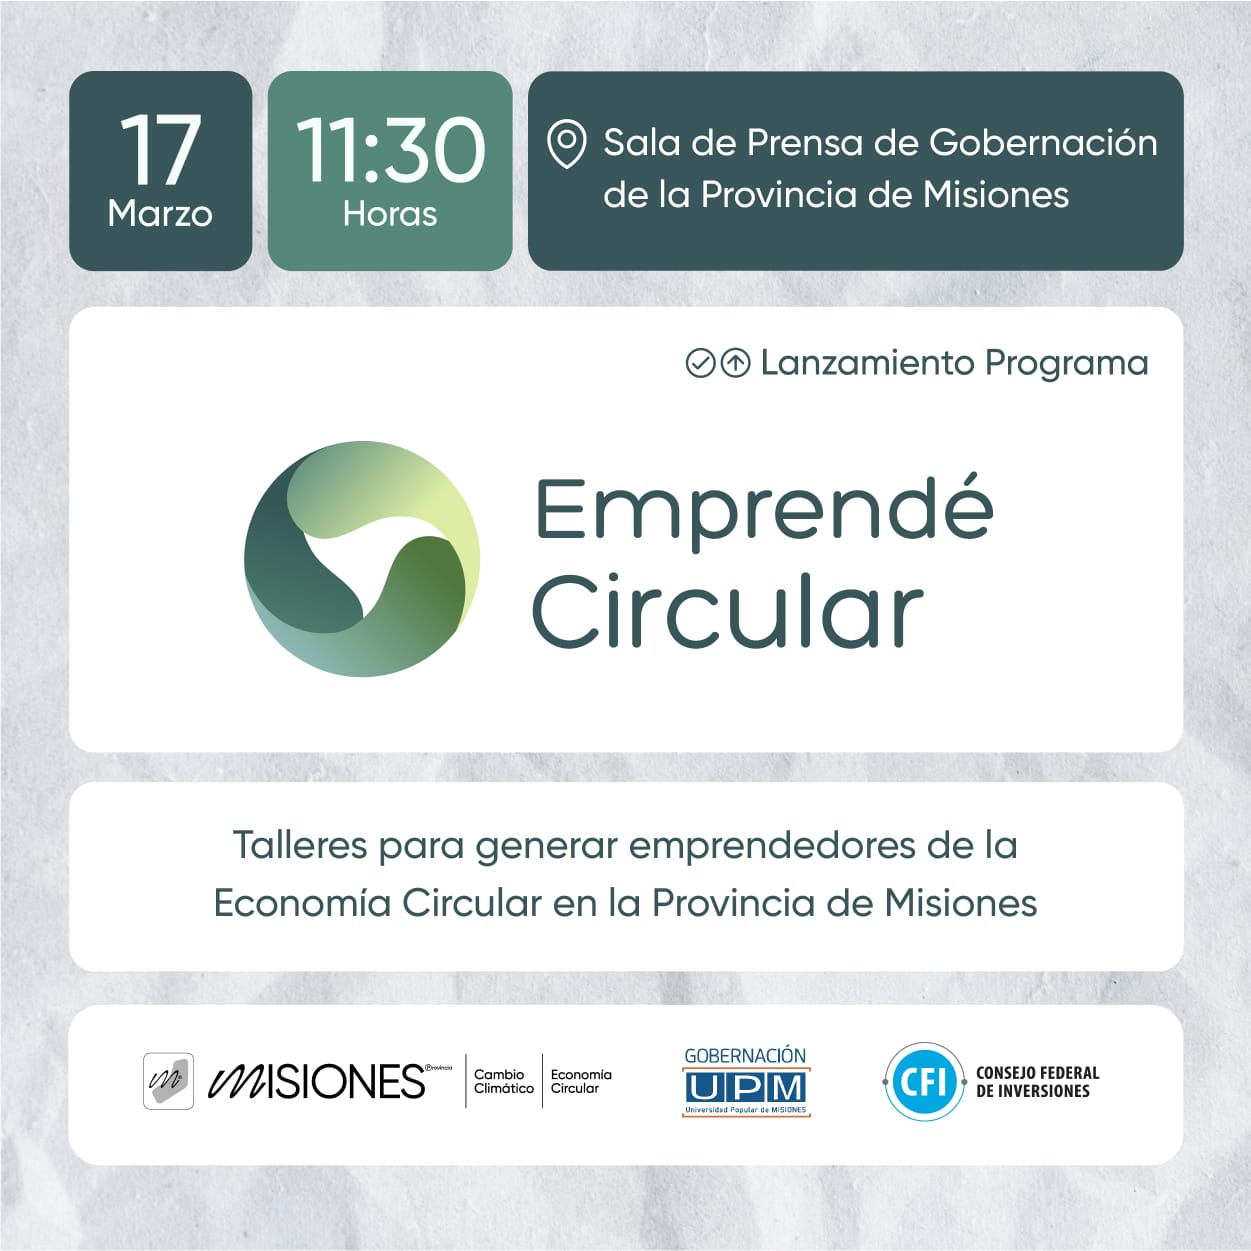 Dictarán Talleres para generar emprendedores de la economía circular en Misiones imagen-1